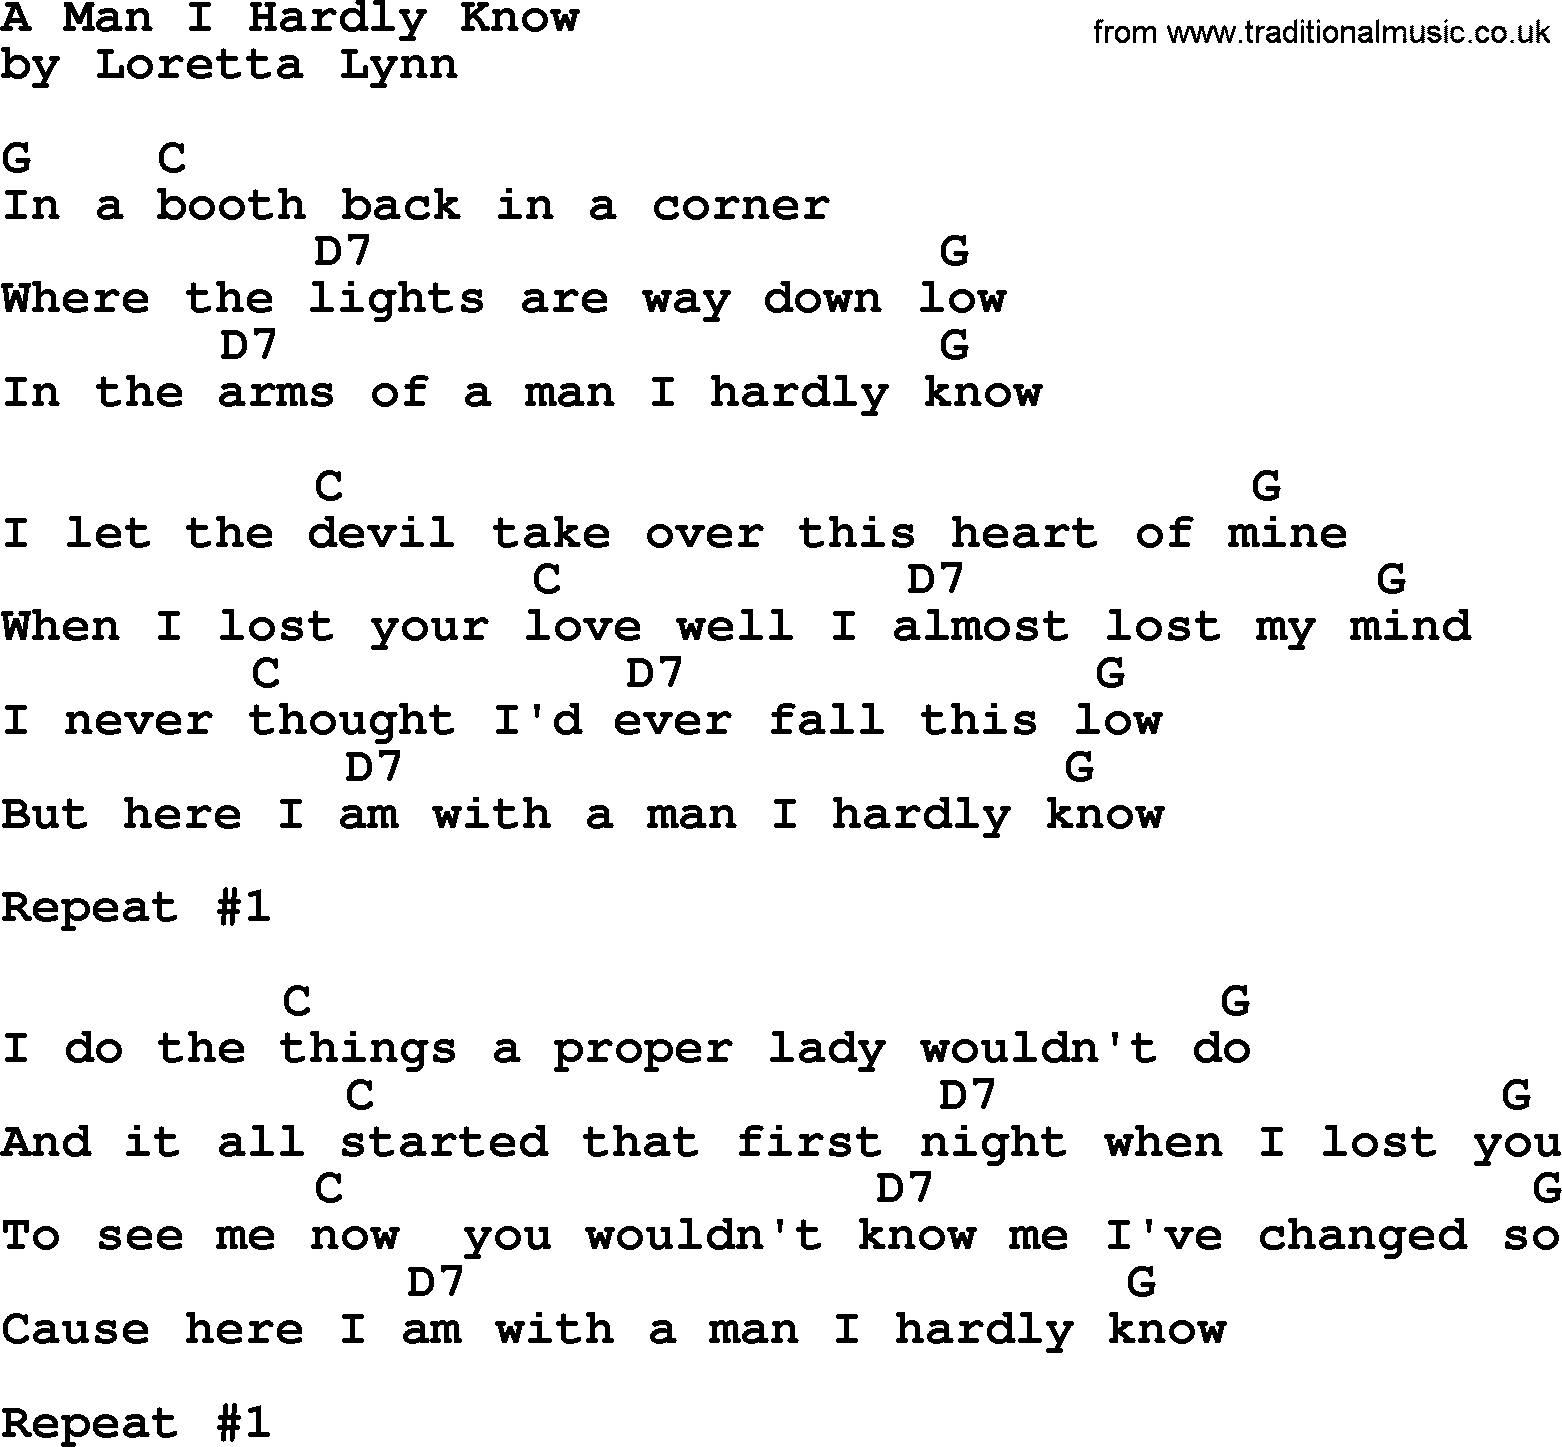 Loretta Lynn song:: A Man I Hardly Know lyrics and chords